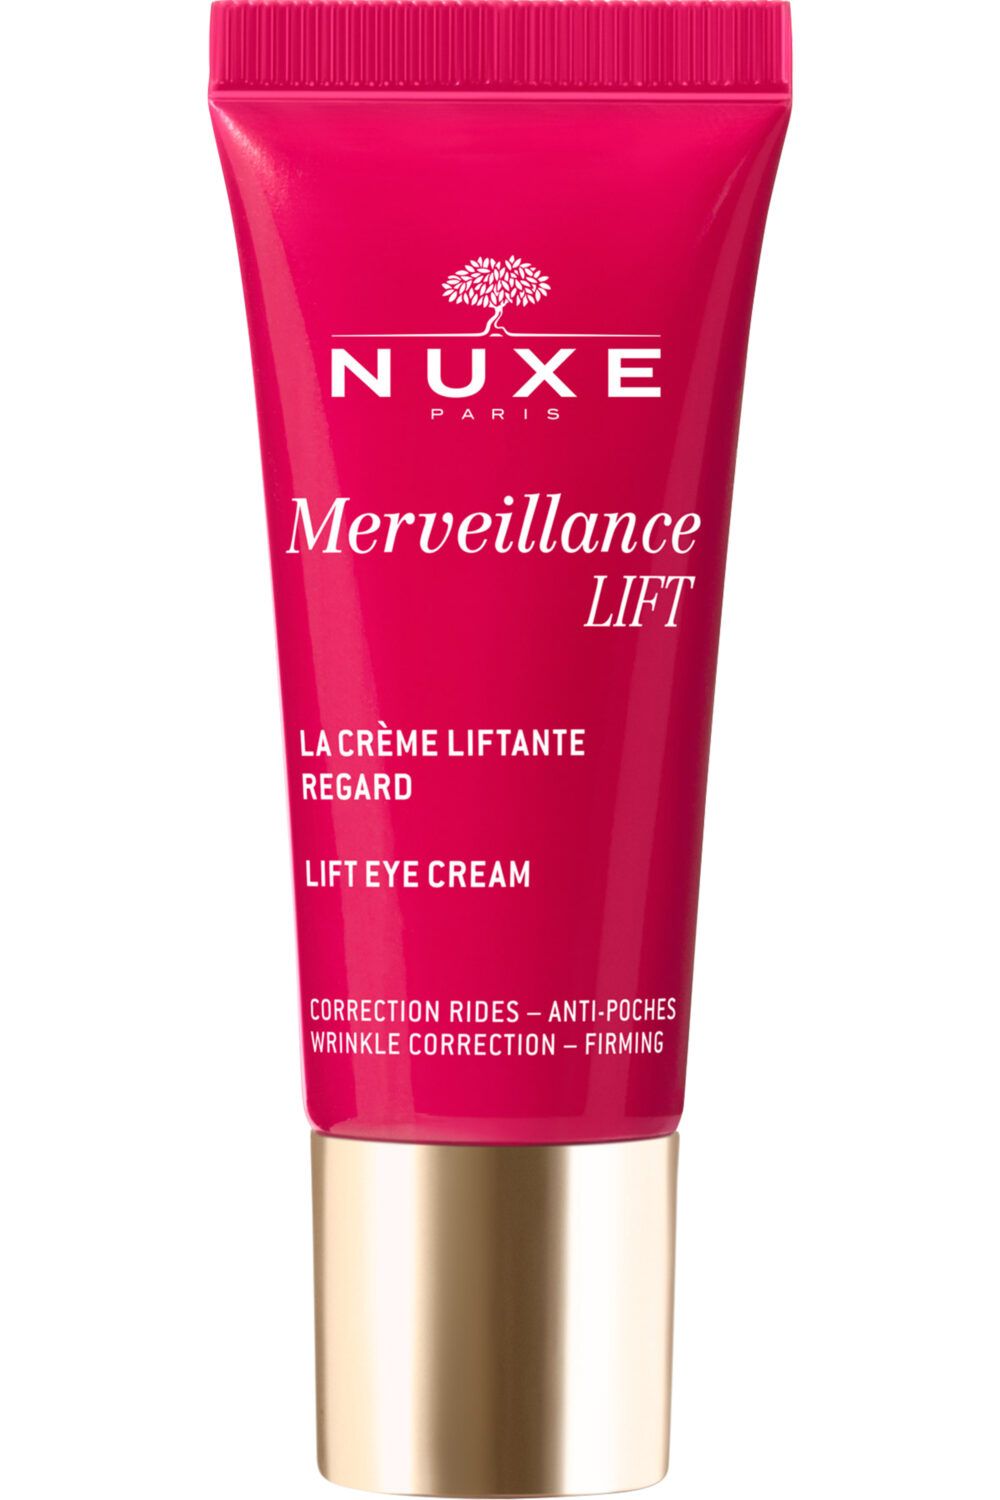 Nuxe - La Crème Liftante regard Merveillance LIFT